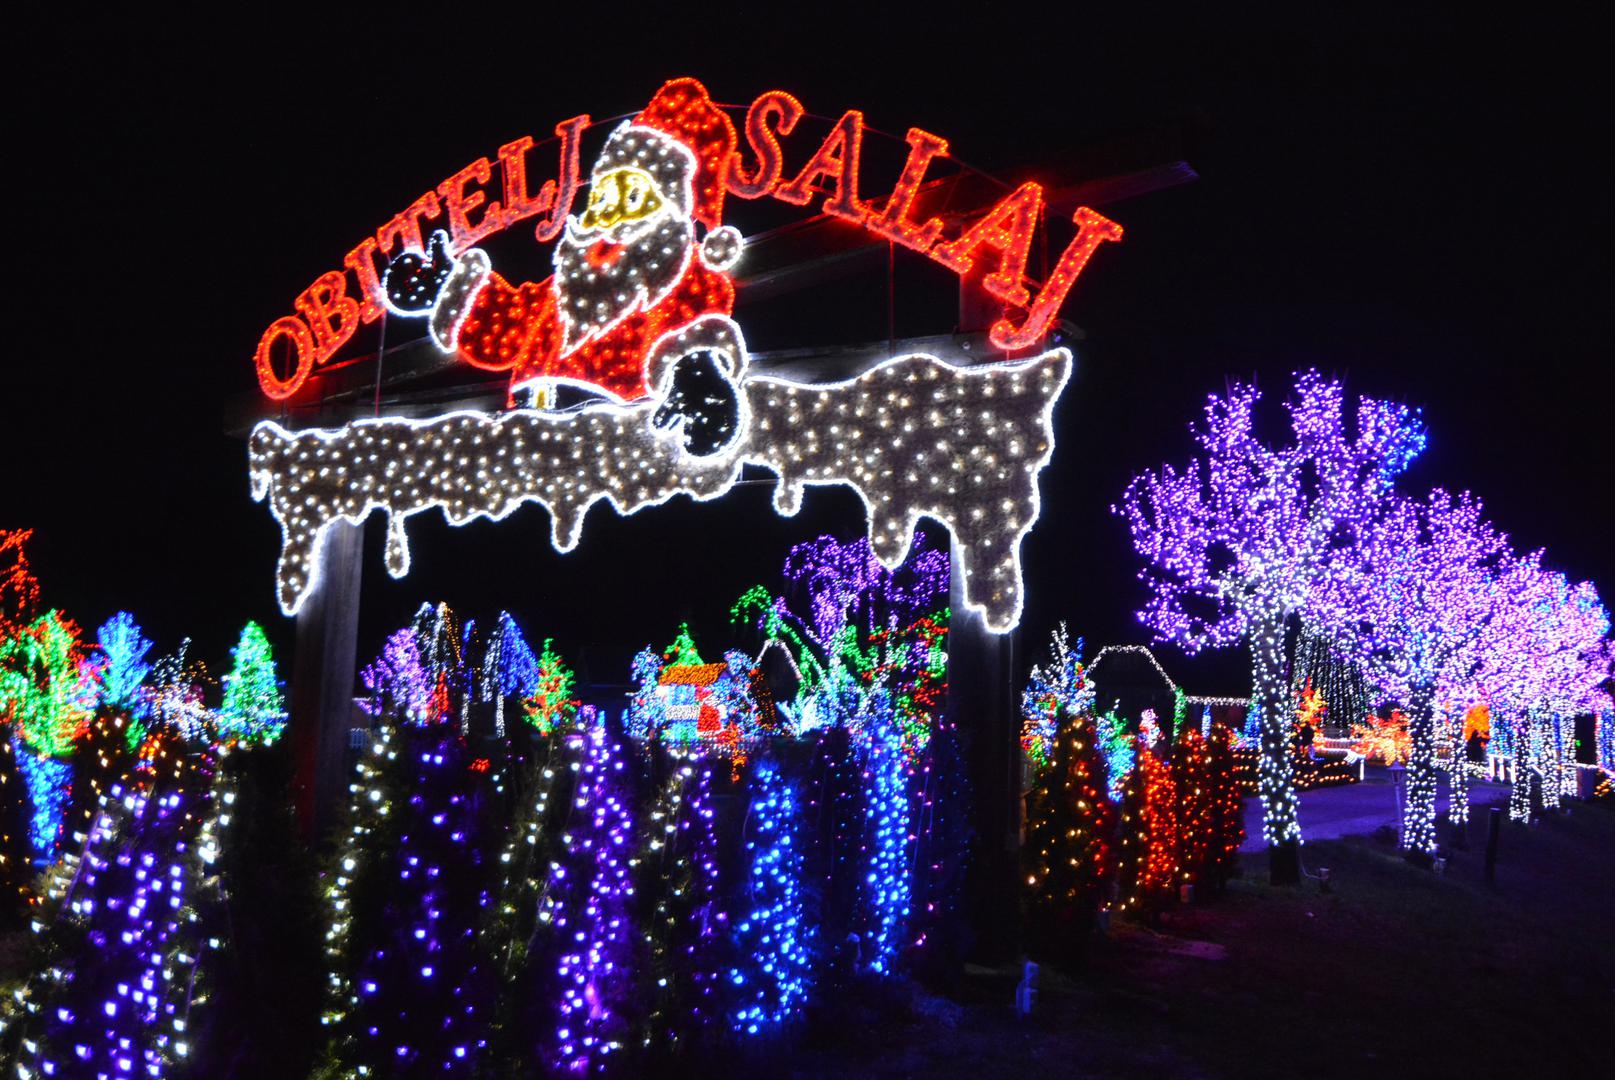 Božićna priča Salajevih zabljesnula je s rekordnih više od 2,5 milijuna lampica.